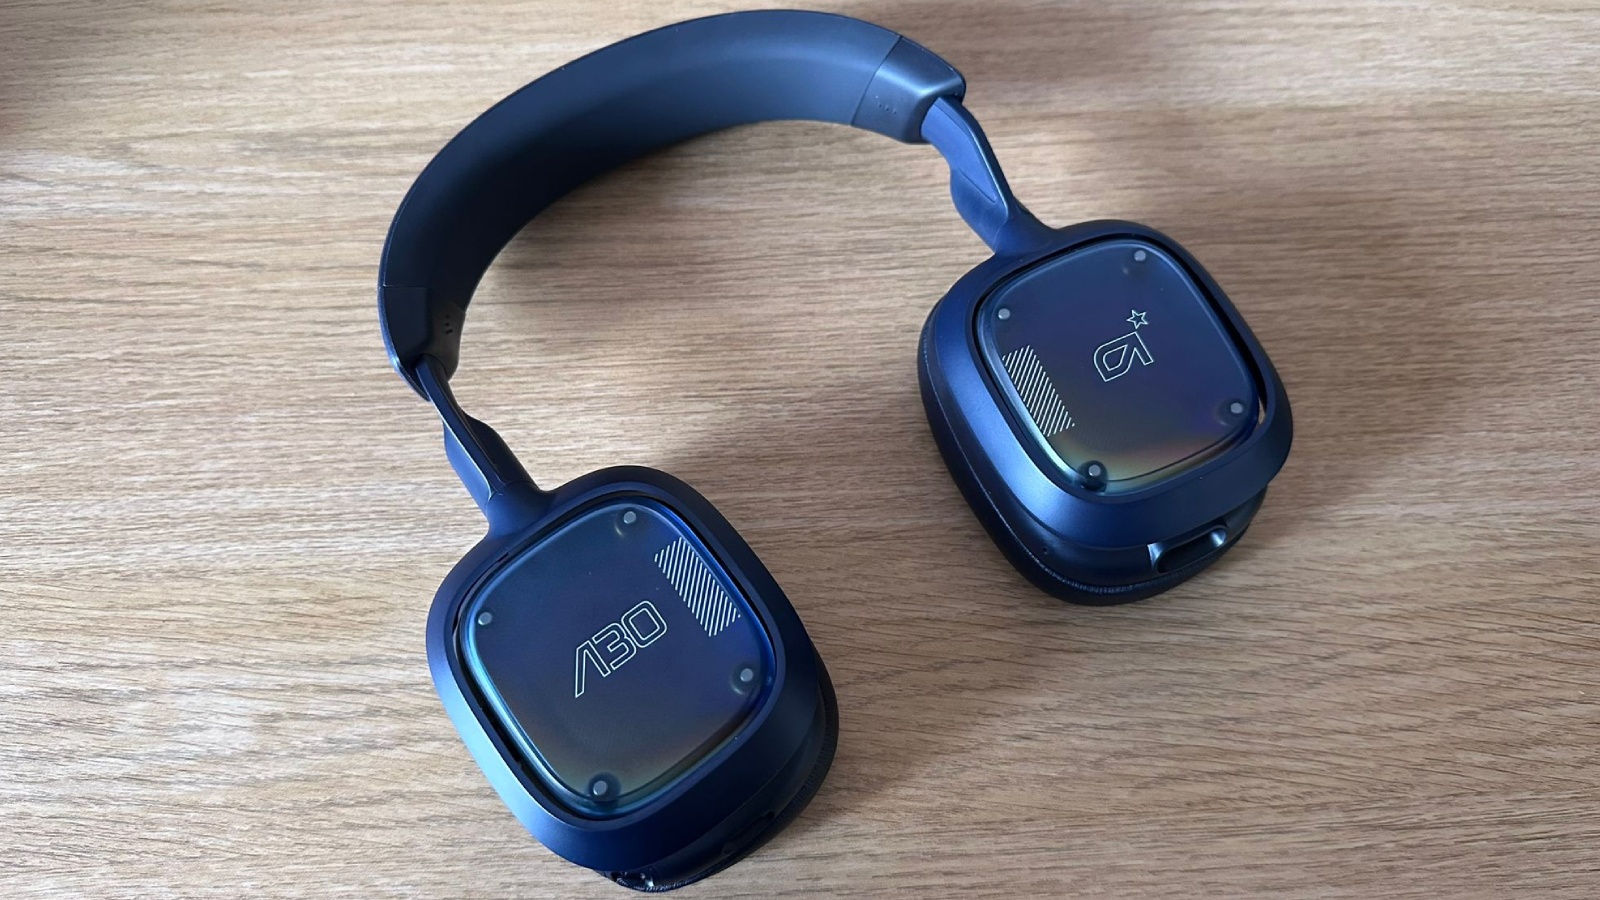 Logitech's Pro X 2 gaming headset promises longer battery life